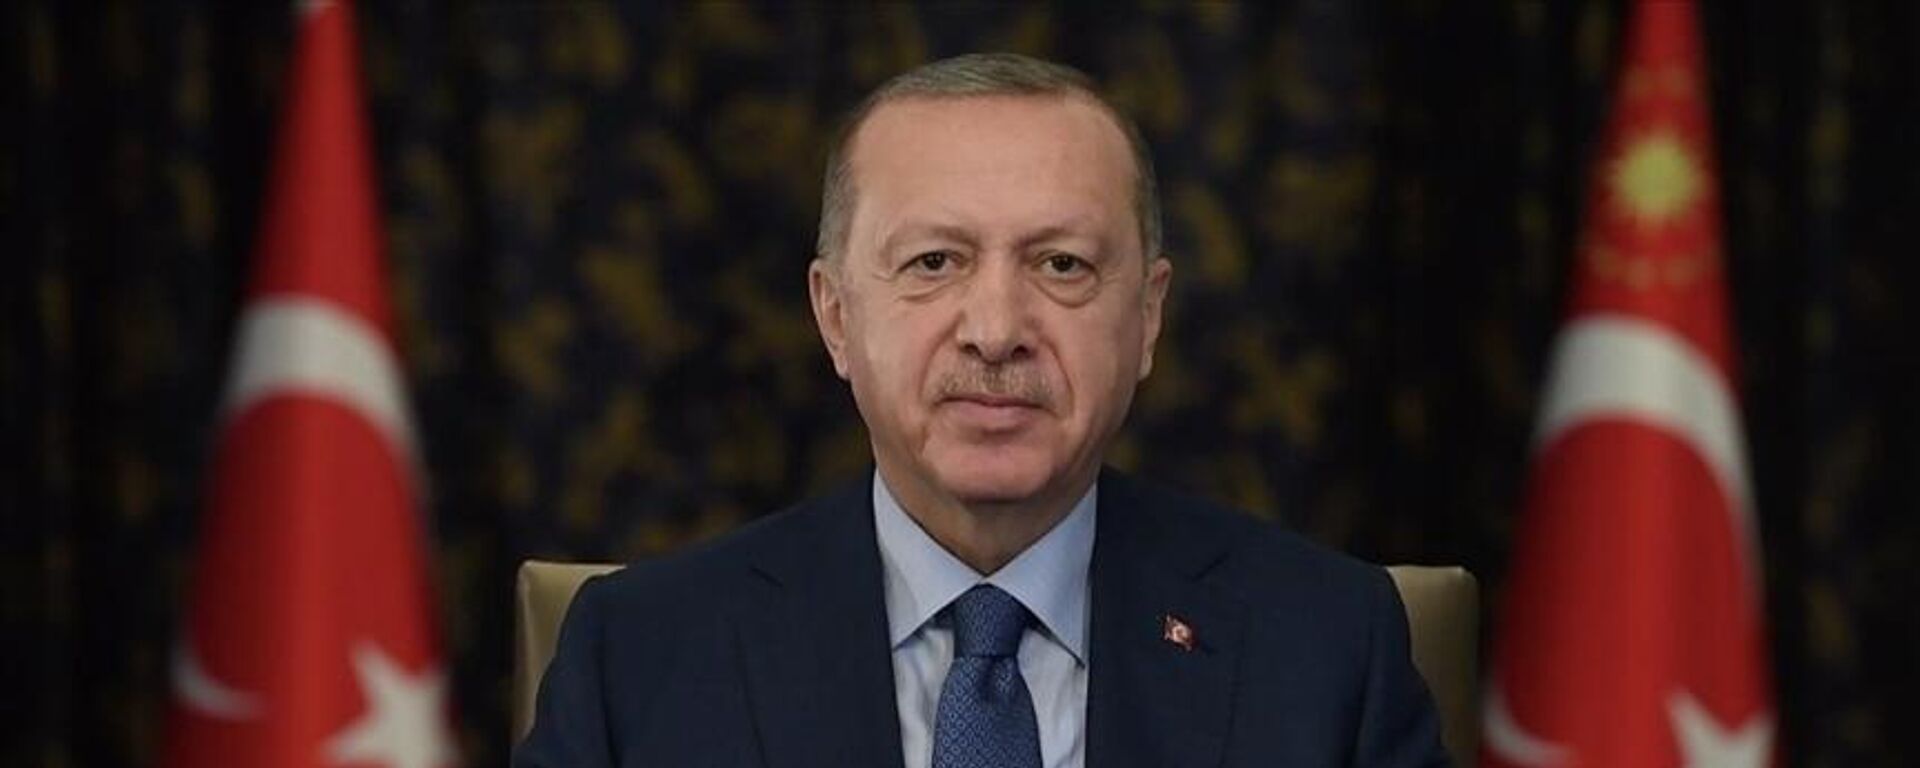 Cumhurbaşkanı Erdoğan: Uluslararası toplumun Afgan halkına sırtını dönme lüksü yoktur - Sputnik Türkiye, 1920, 21.10.2021